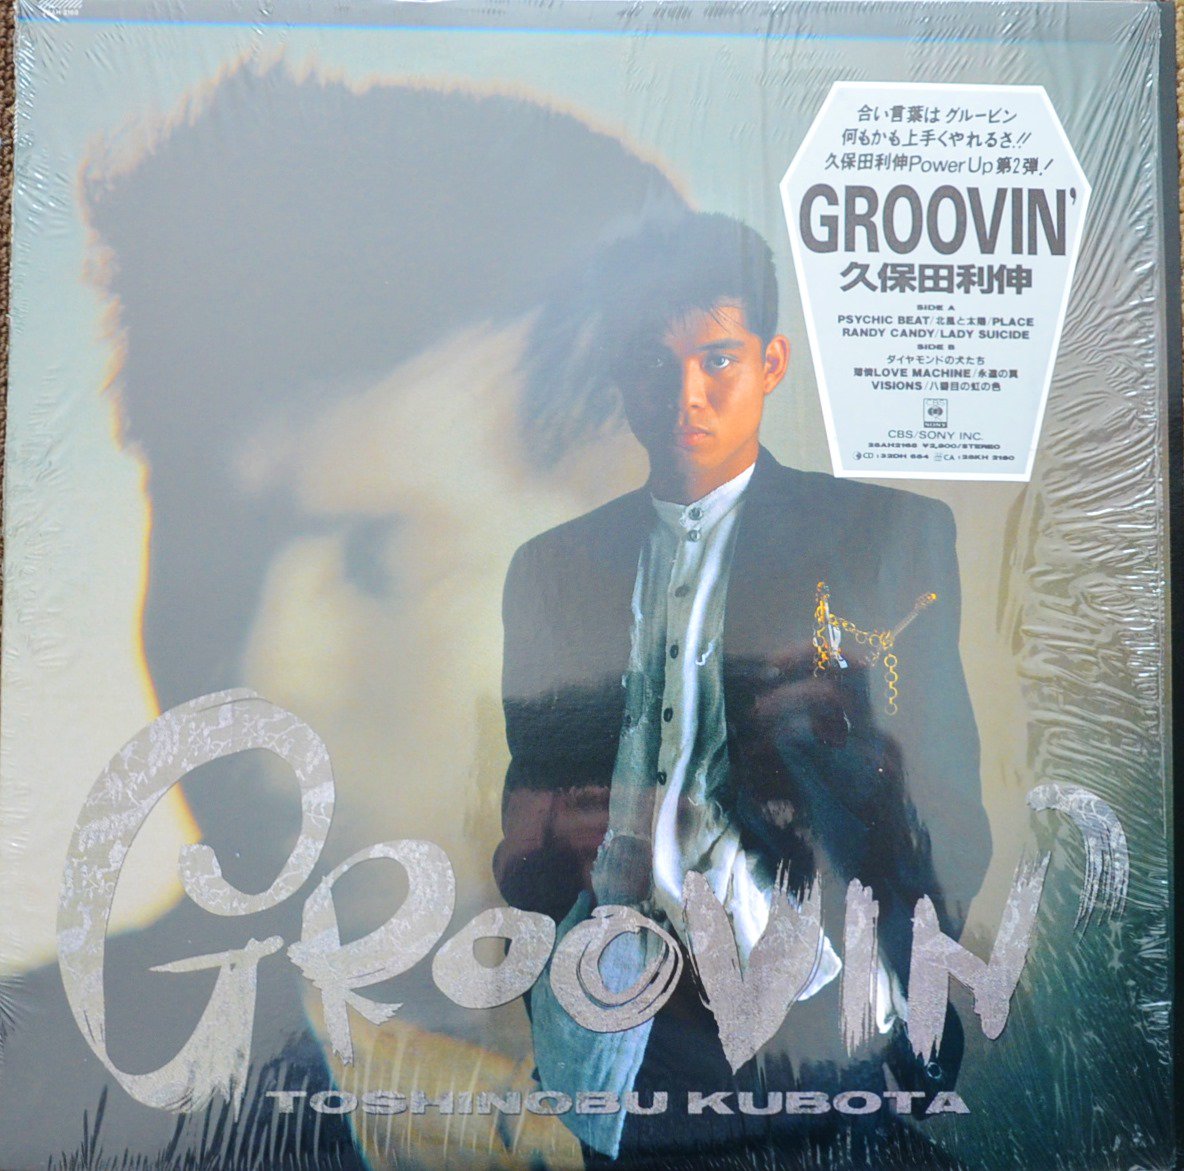 久保田利伸 TOSHINOBU KUBOTA / GROOVIN' (LP) - HIP TANK RECORDS